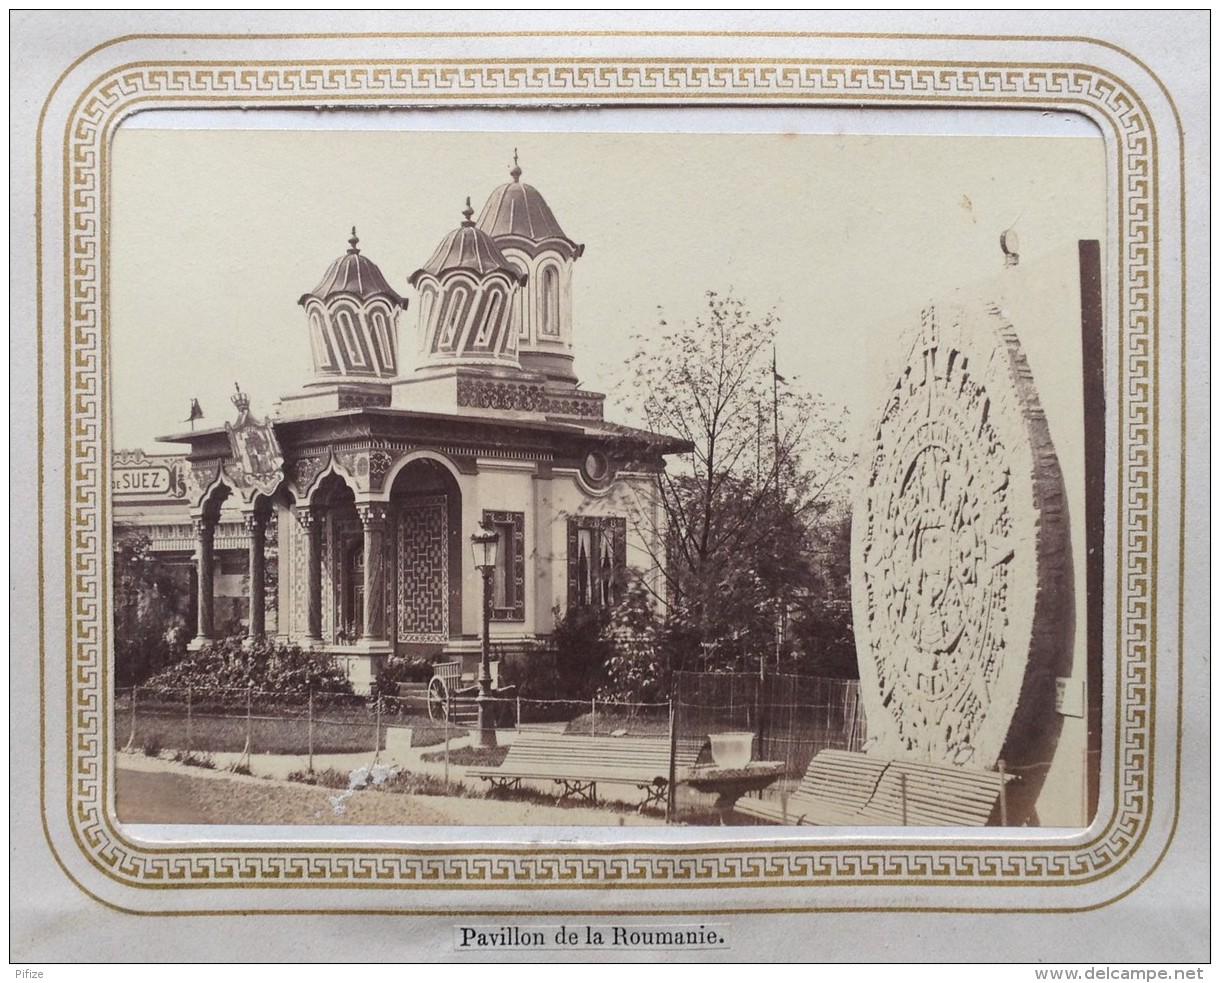 Pierre Petit . Rare album de l'Exposition Universelle de 1867 à Paris . Etats Pontificaux Mexique Chine Russie Egypte...